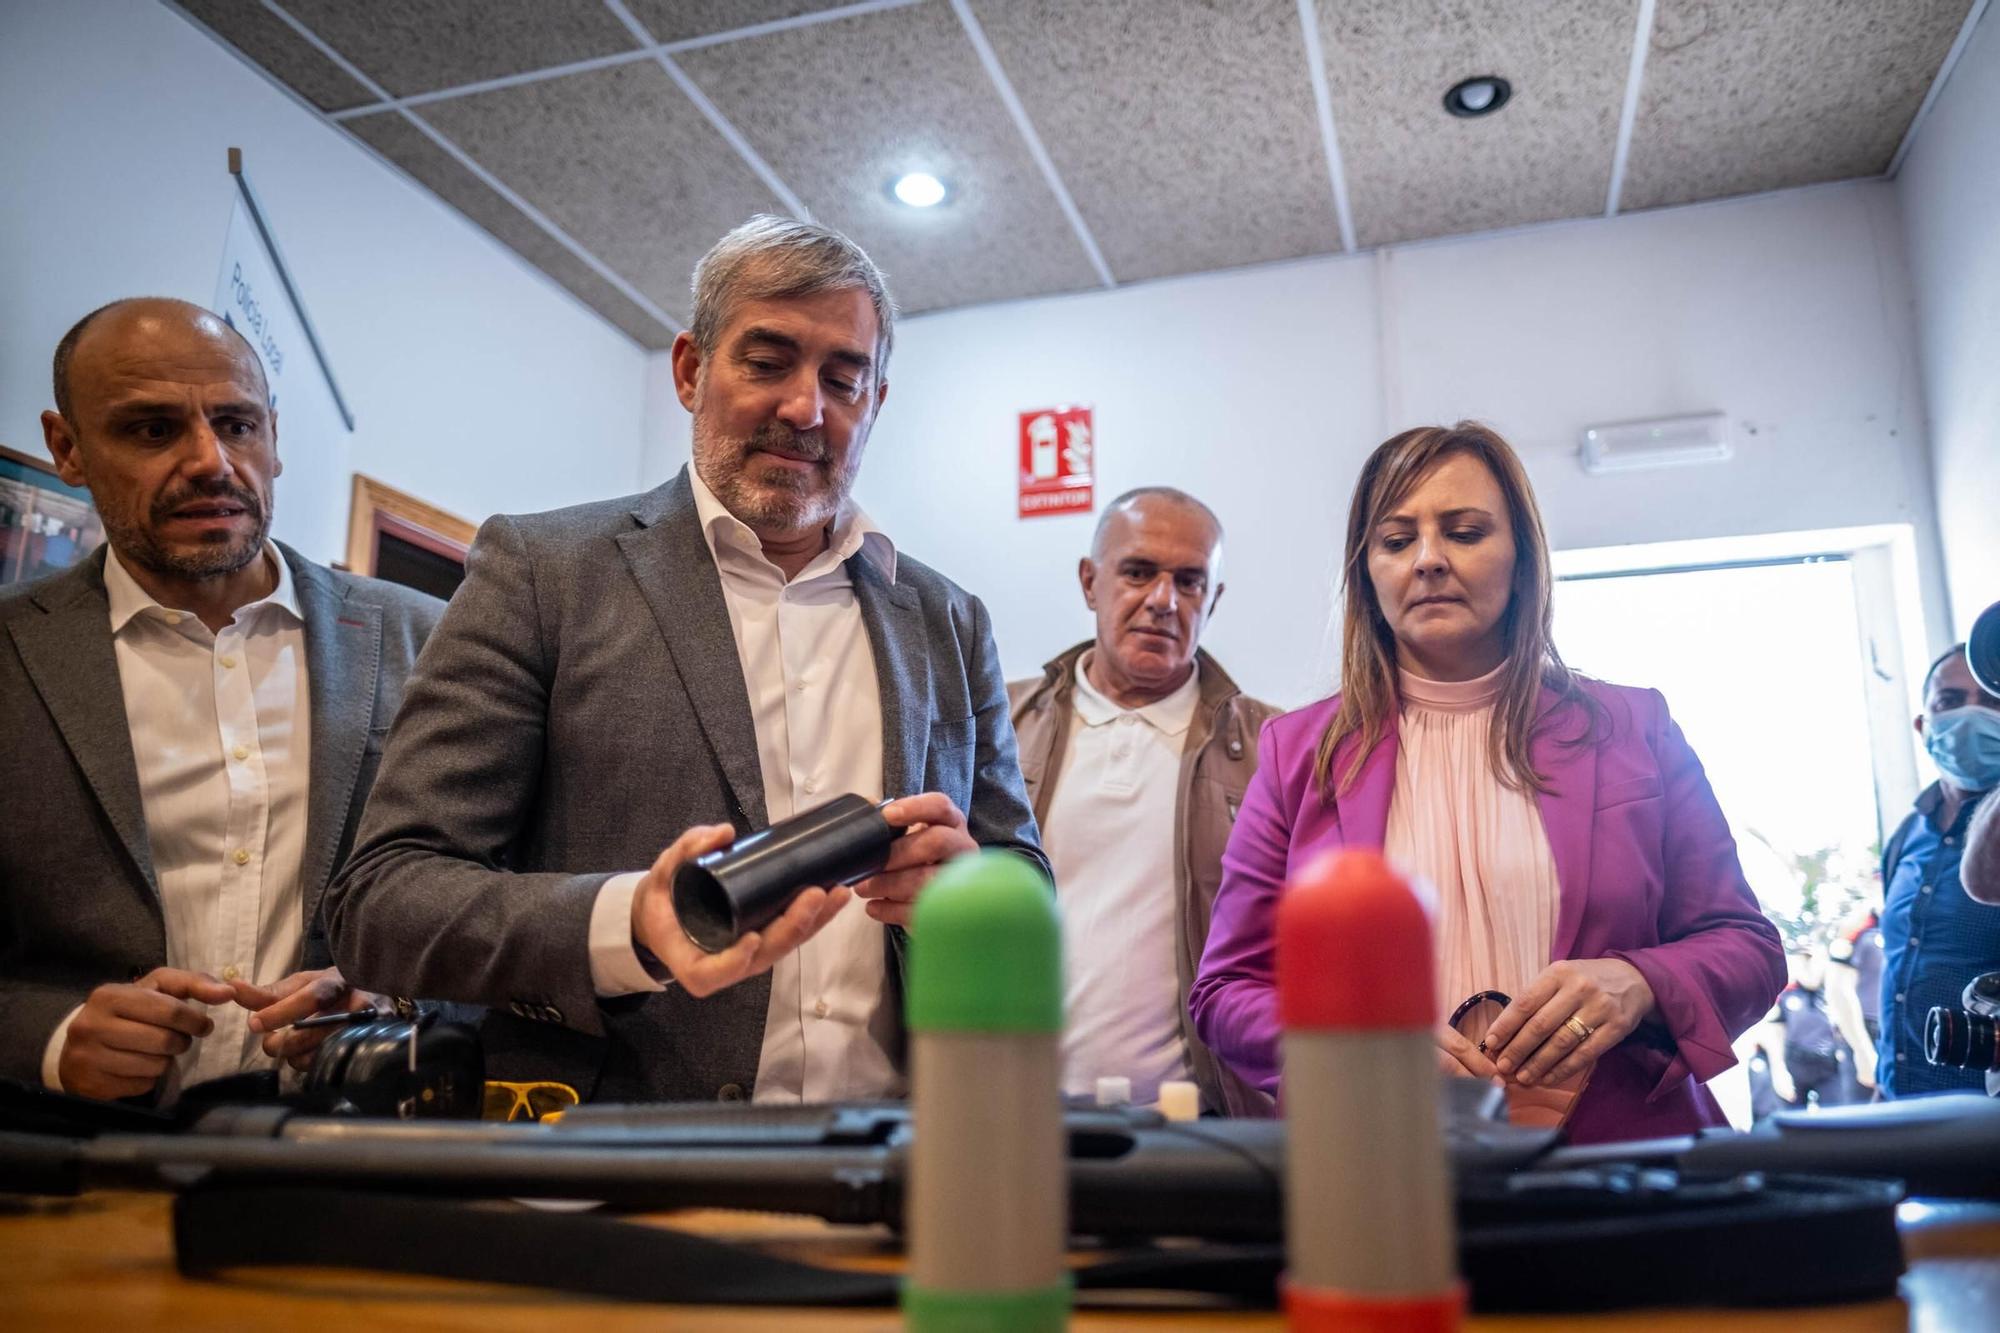 El presidente de Canarias visita la sede de la Policía Autonómica en Tenerife